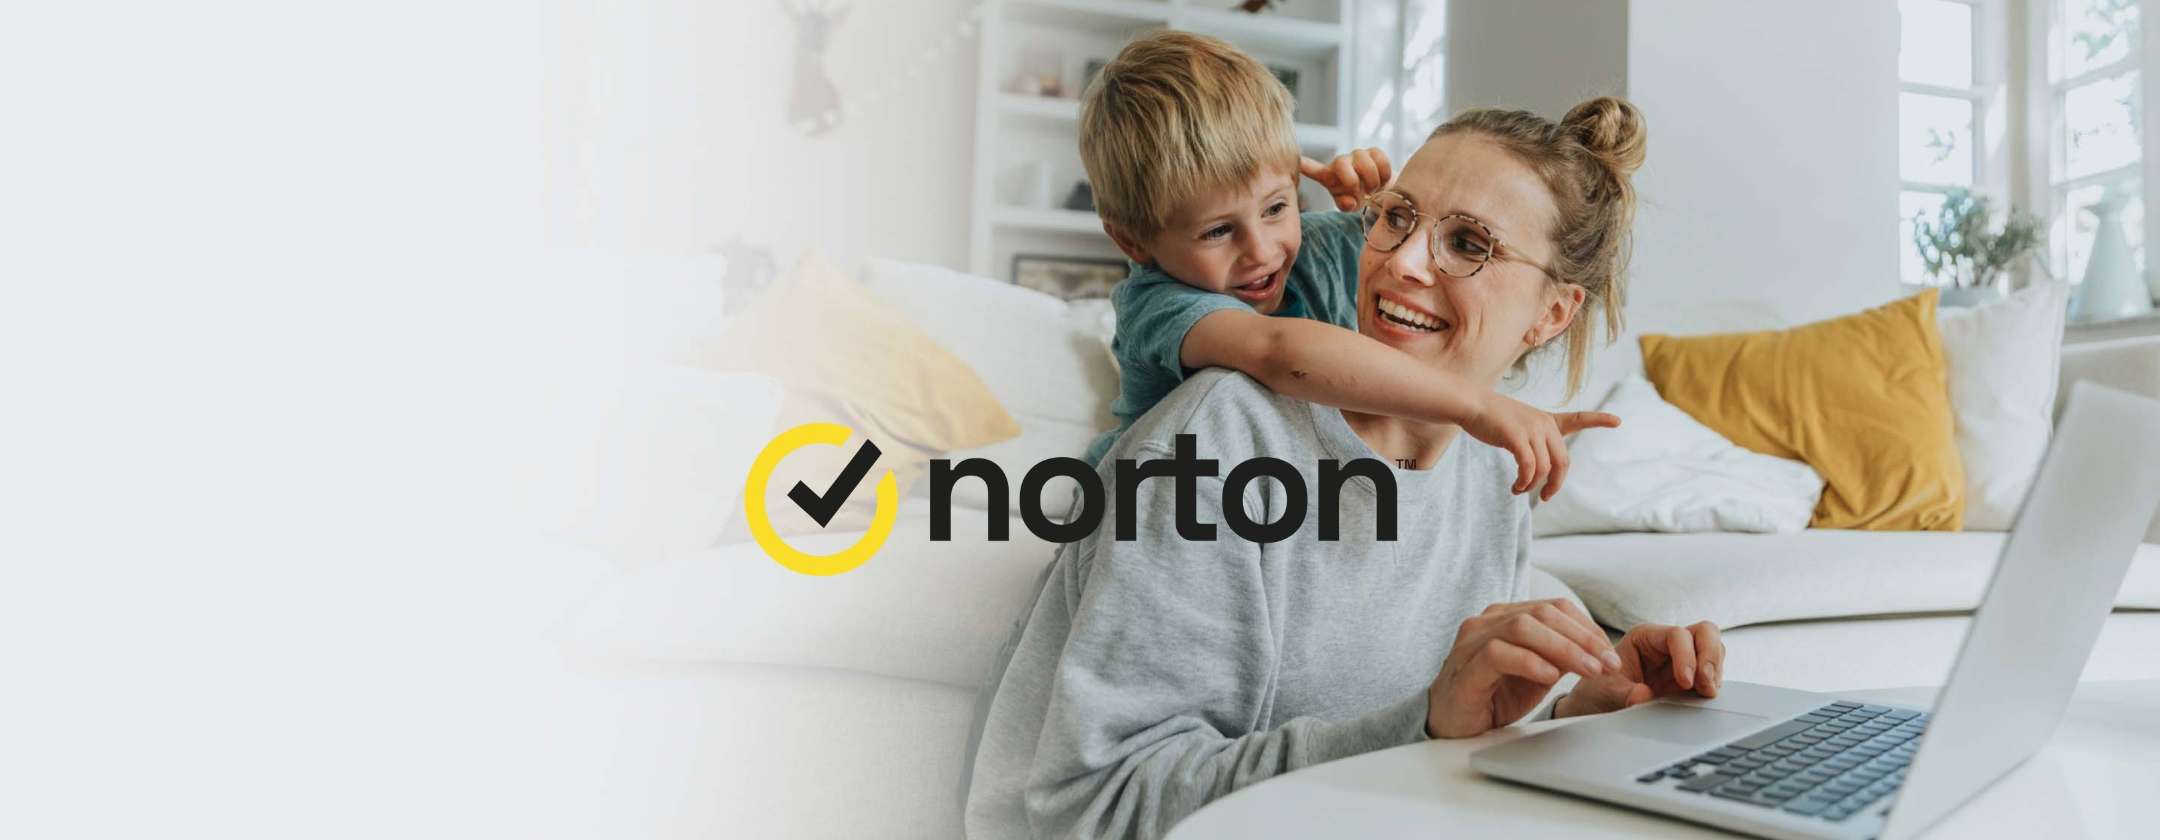 norton-antivirus-scelta-giusta